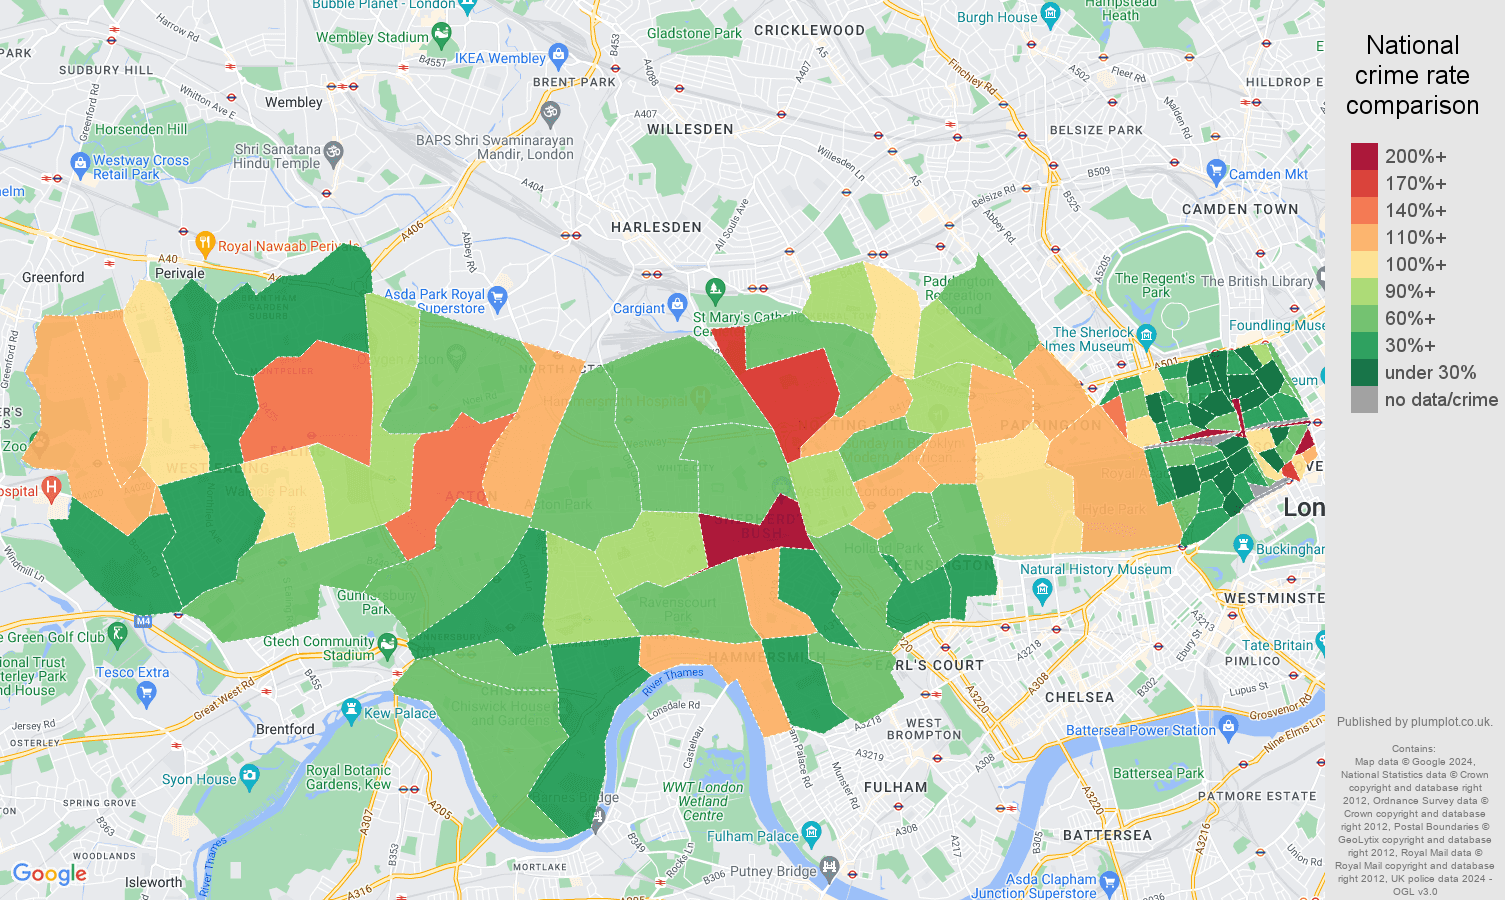 West London public order crime rate comparison map